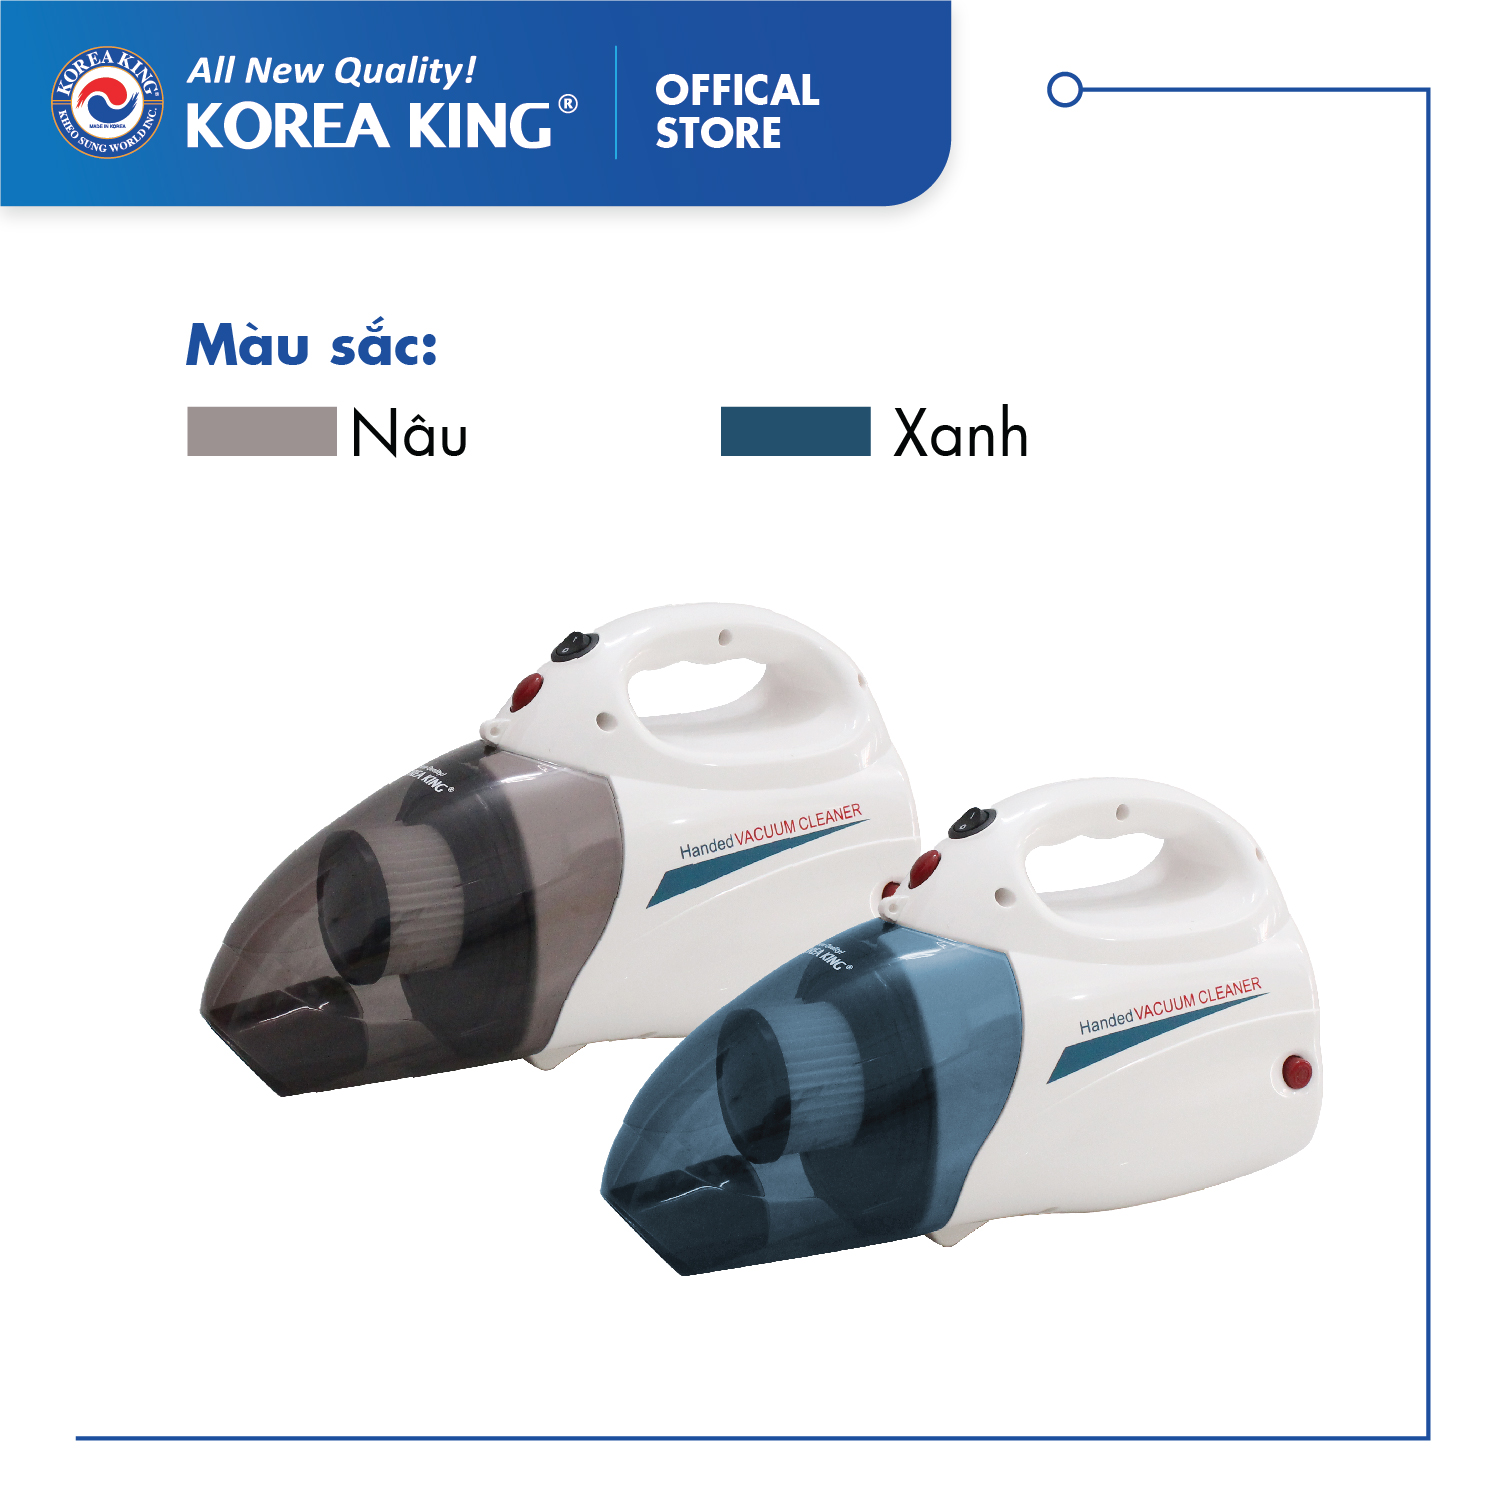 Máy hút bụi cầm tay Korea King PDG-666 (220v/50Hz,1000W, màu xanh trắng, 2 chức năng hút thổi) - Hàng chính hãng